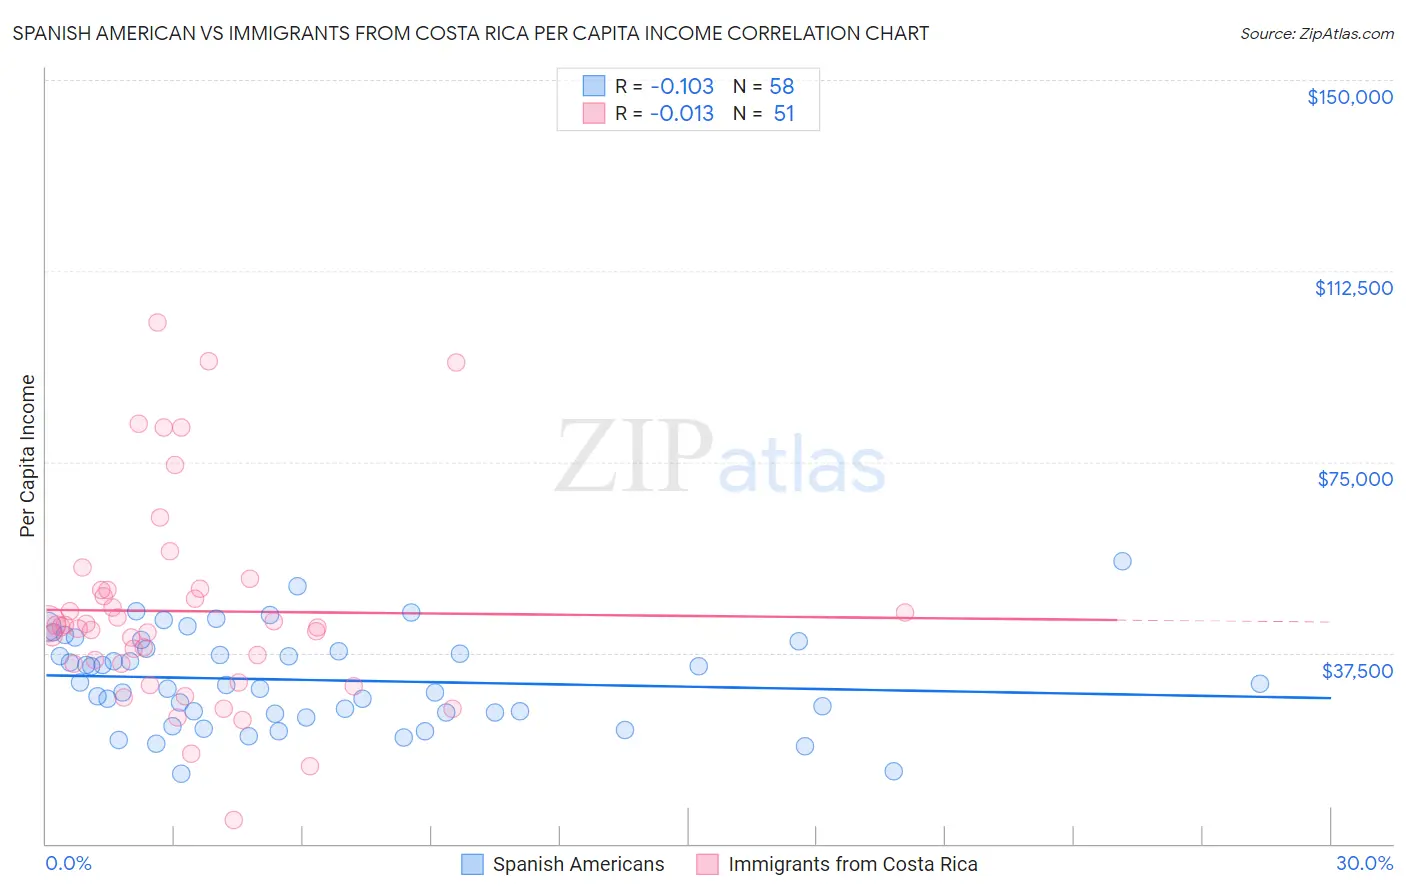 Spanish American vs Immigrants from Costa Rica Per Capita Income